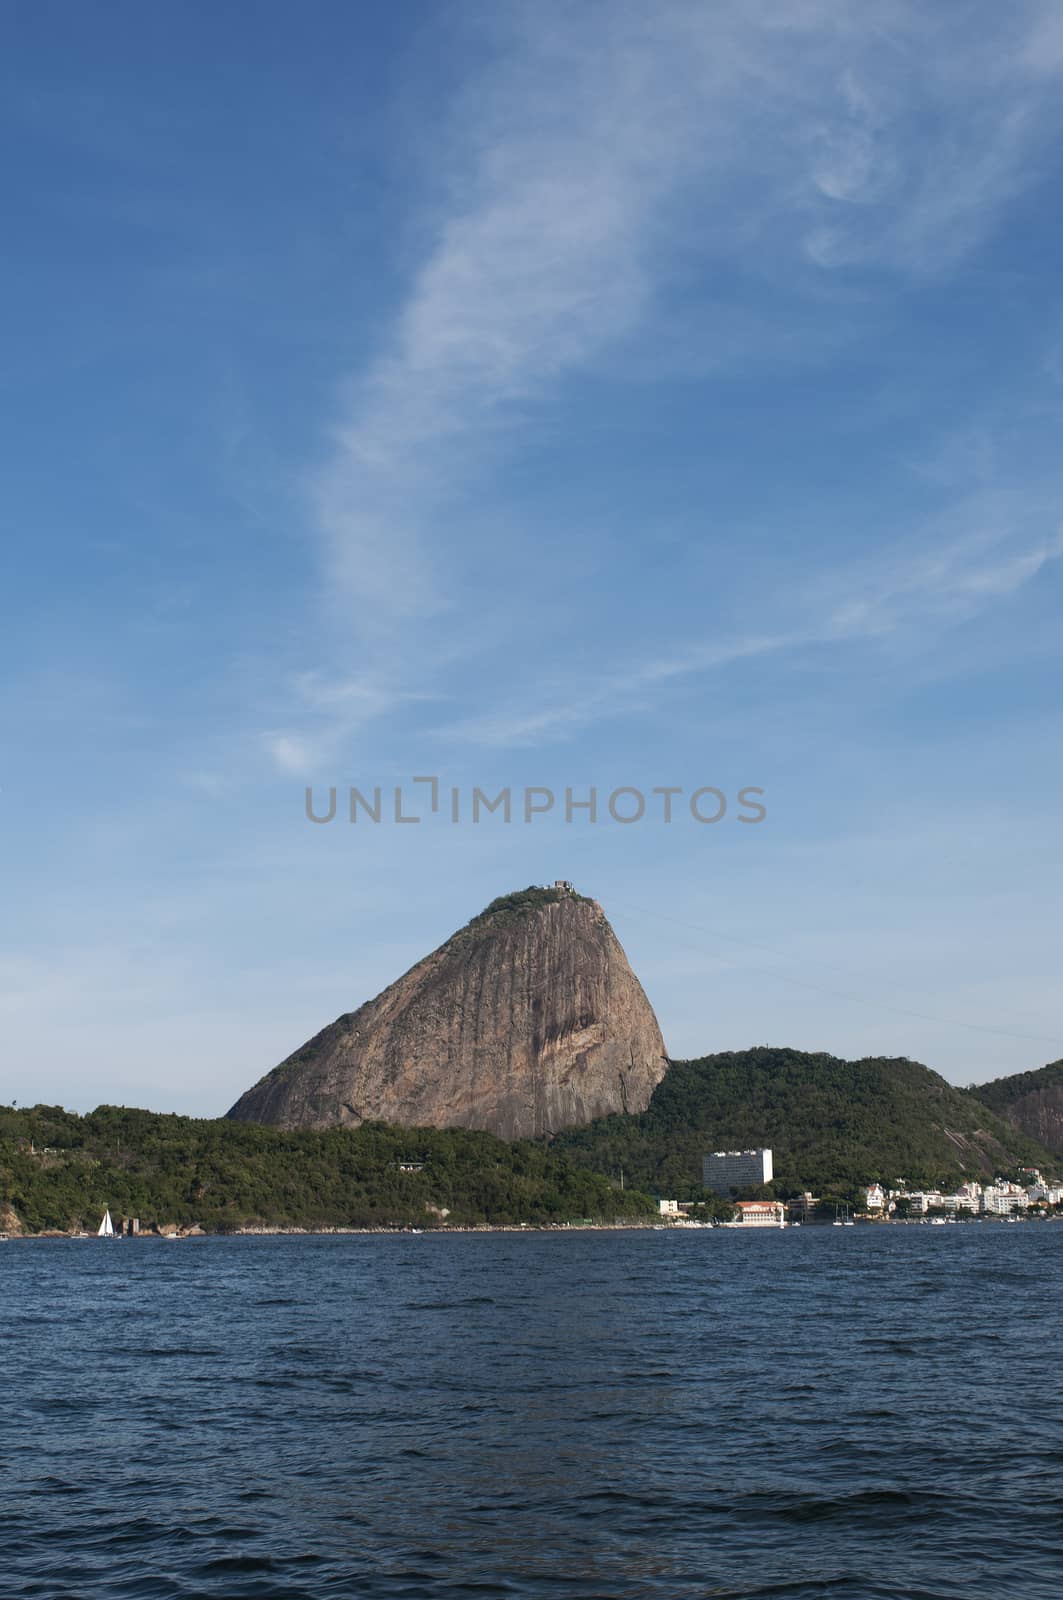 Rio de Janeiro is the capital city of the State of Rio de Janeiro, the second largest city of Brazil,